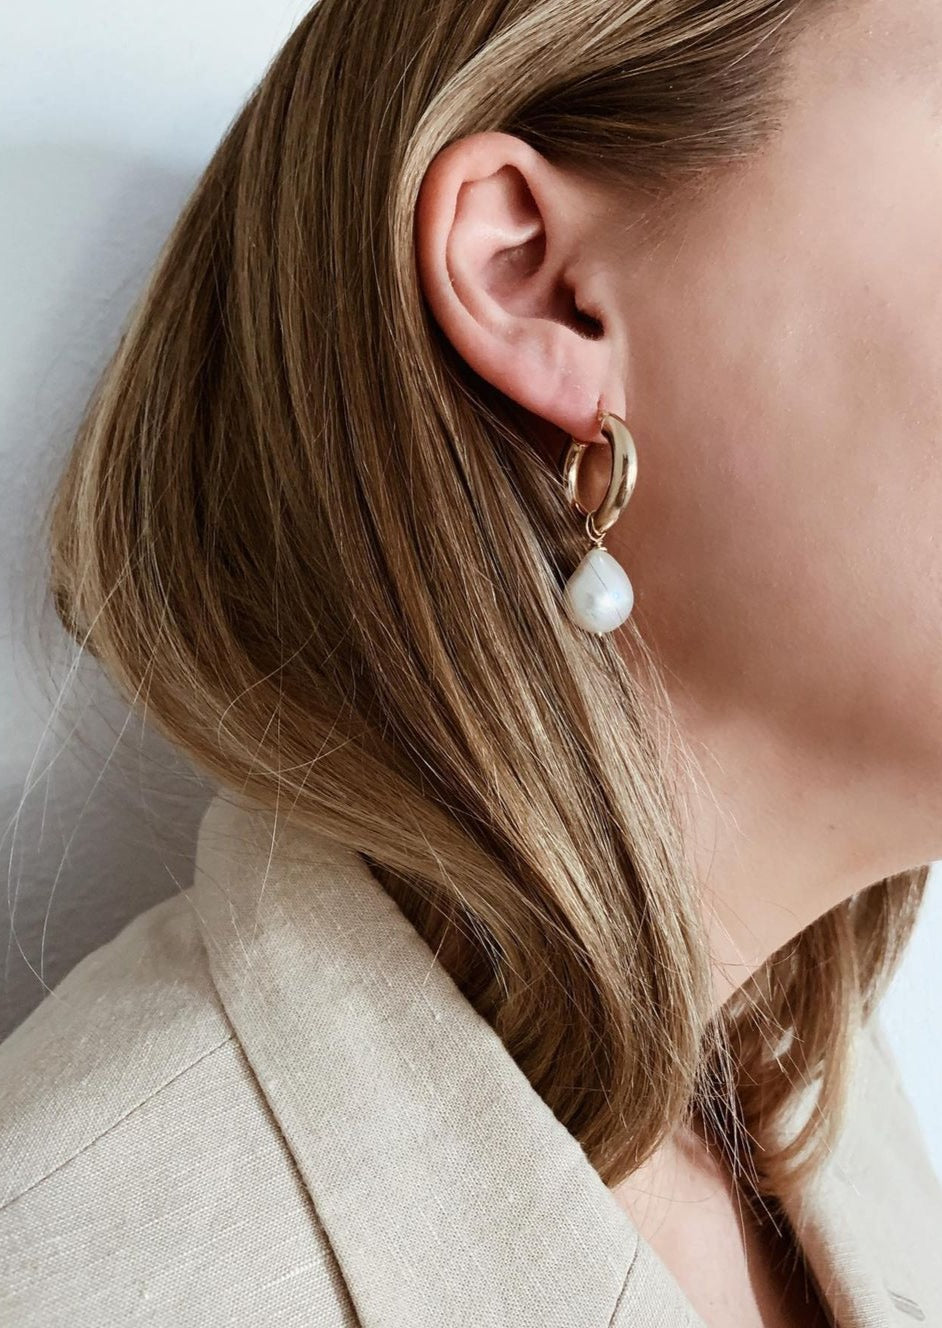 Buy Pearl Hoop Earrings for Women Online in India